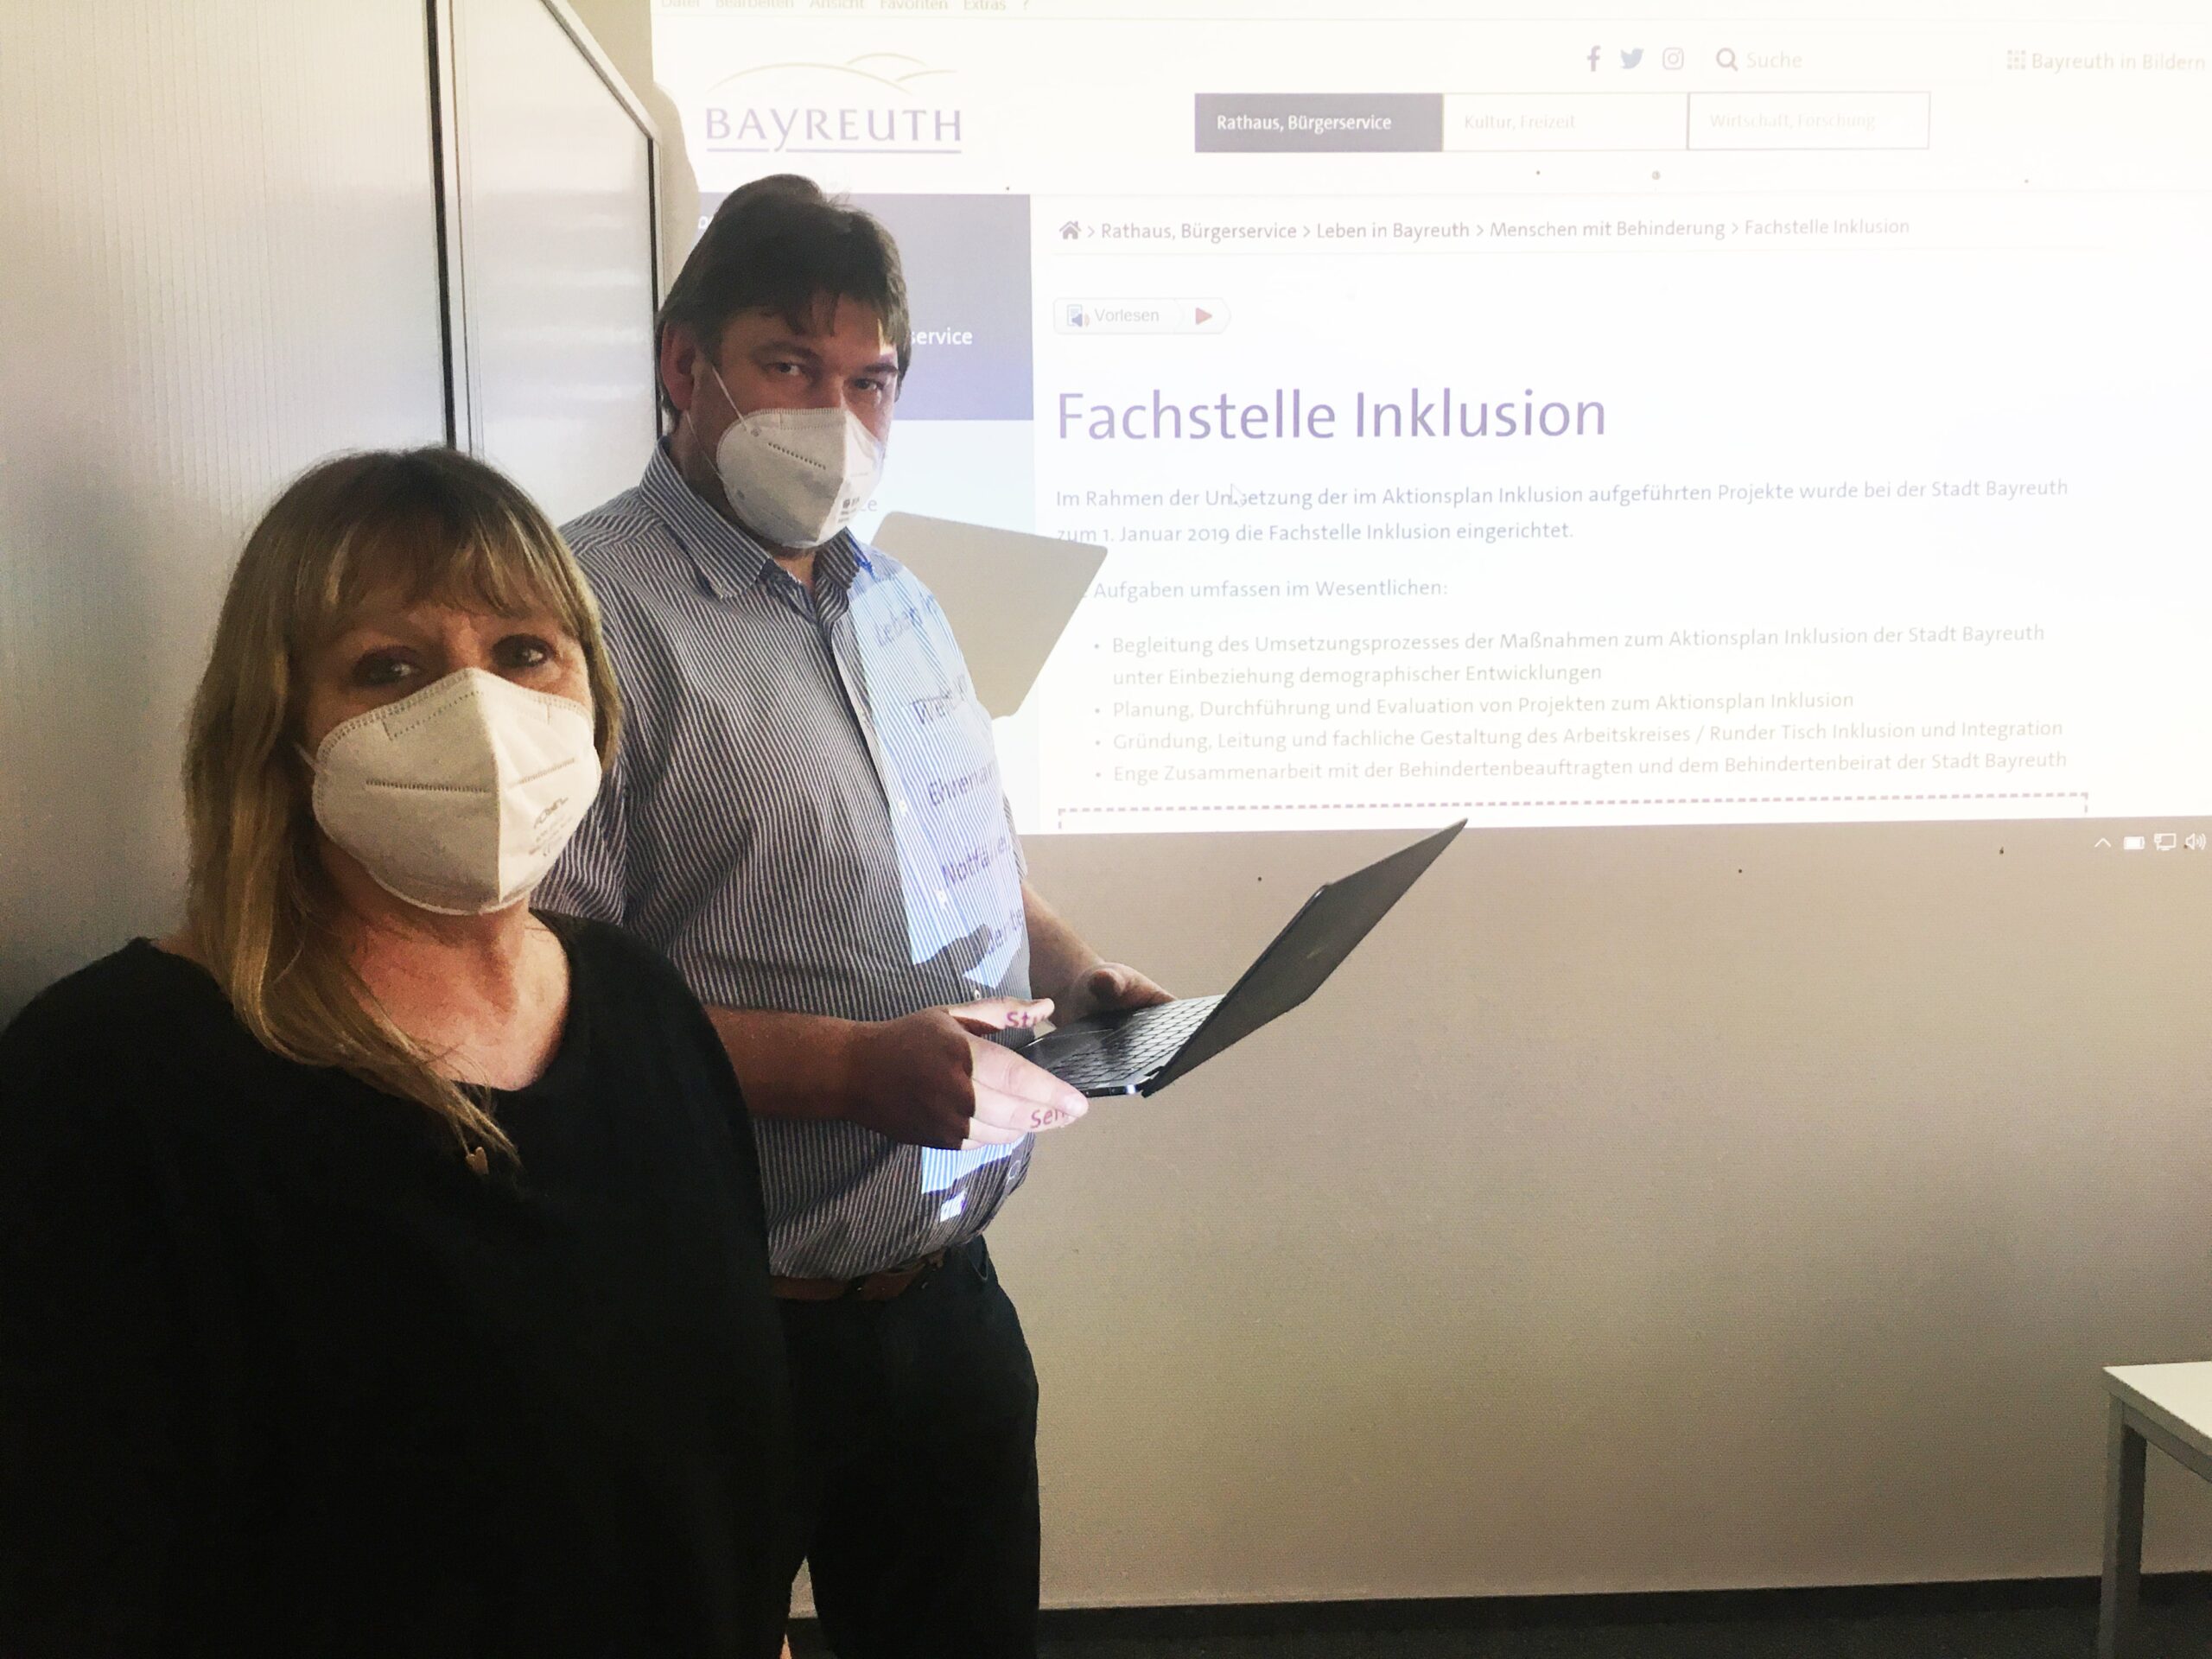 Frau Lebershausen (Fachstelle Inklusion) und Herr Höhmann (Mitglied des Behindertenbeirates) stehend vor Leinwand mit Bild der Homepage der Fachstelle Inklusion im Hintergrund.